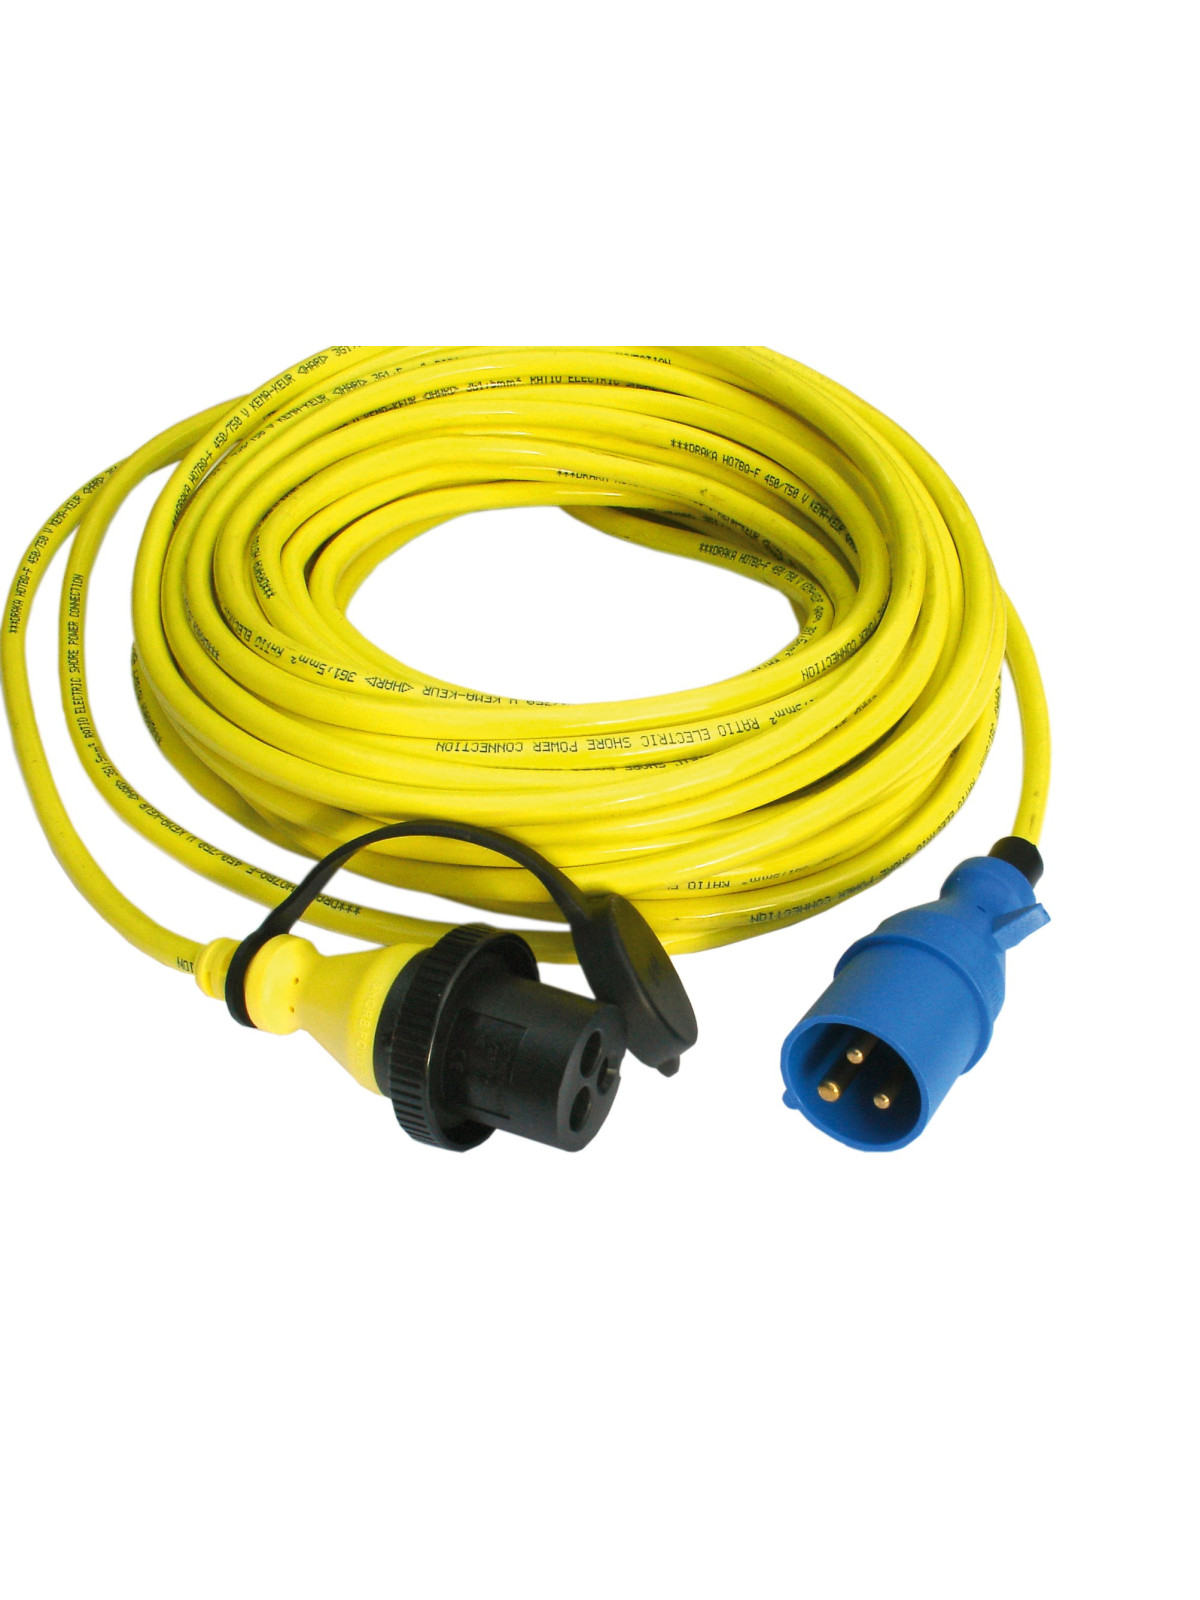 Cable alargador extensible 10m 16a/250v. Alargador 10m para 16a/250v.  Alargadera de 10m como max 3680w.